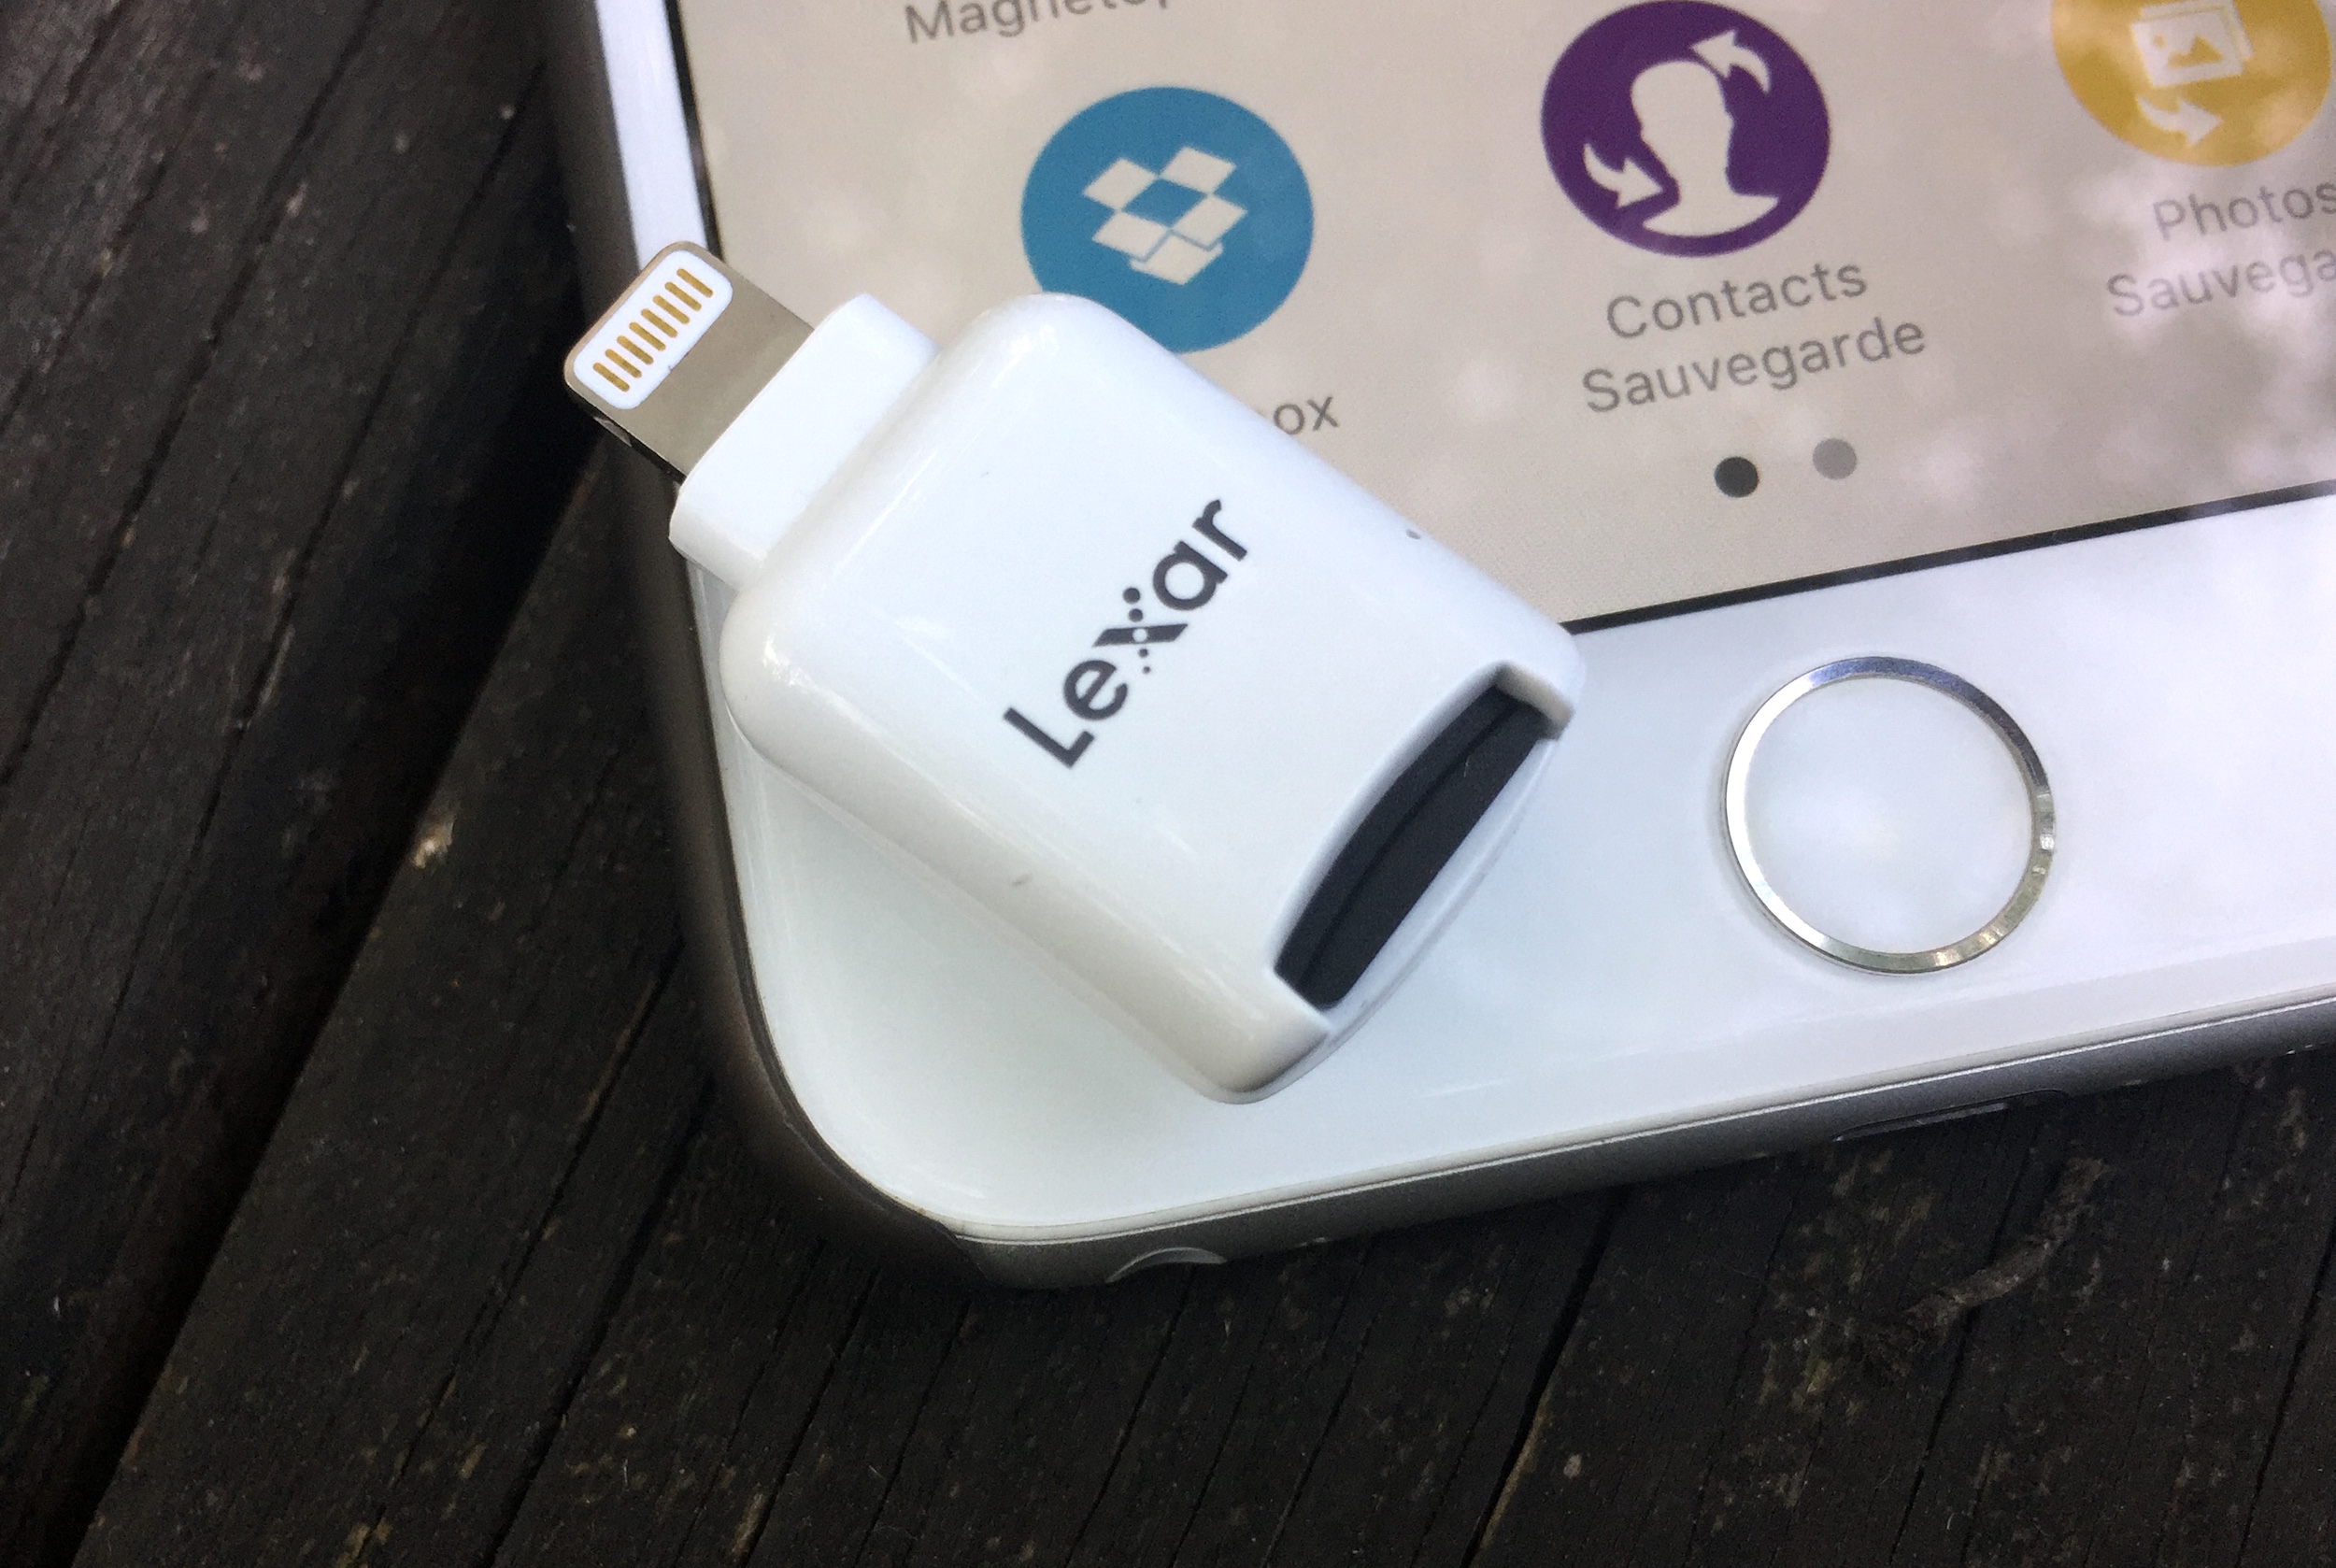 Avant son test, le lecteur de carte micro-SD pour iPhone et iPad de Lexar  se dévoile en photos